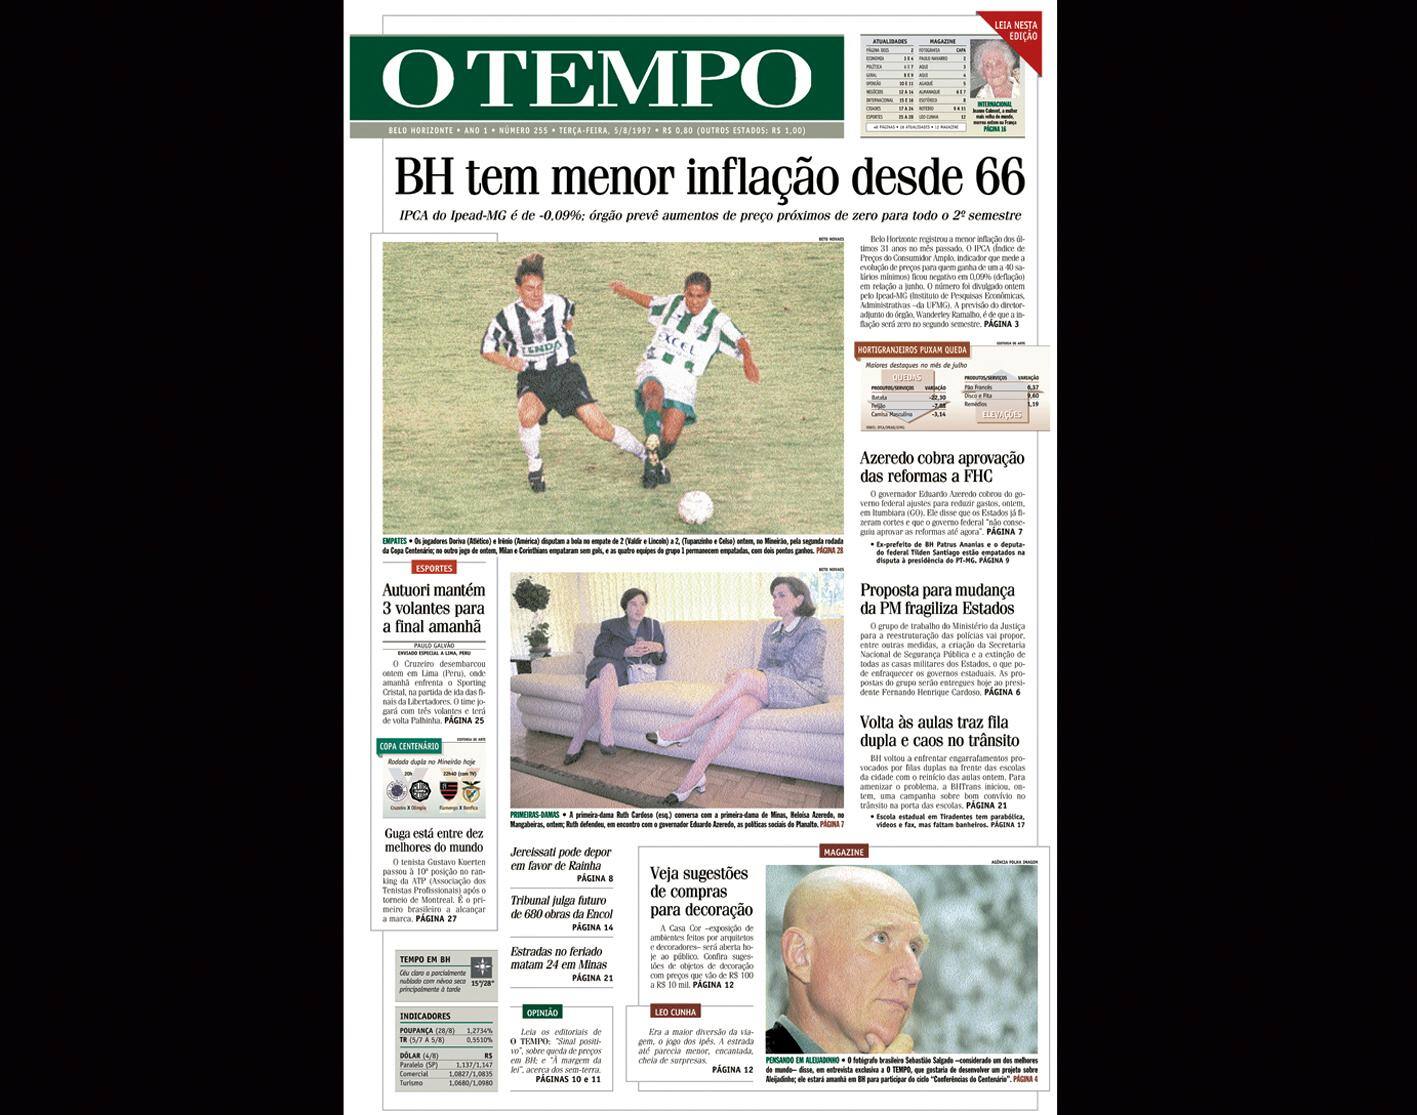 Capa do jornal O TEMPO no dia 5.8.1997; resgate do acervo marca as comemorações dos 25 anos da publicação